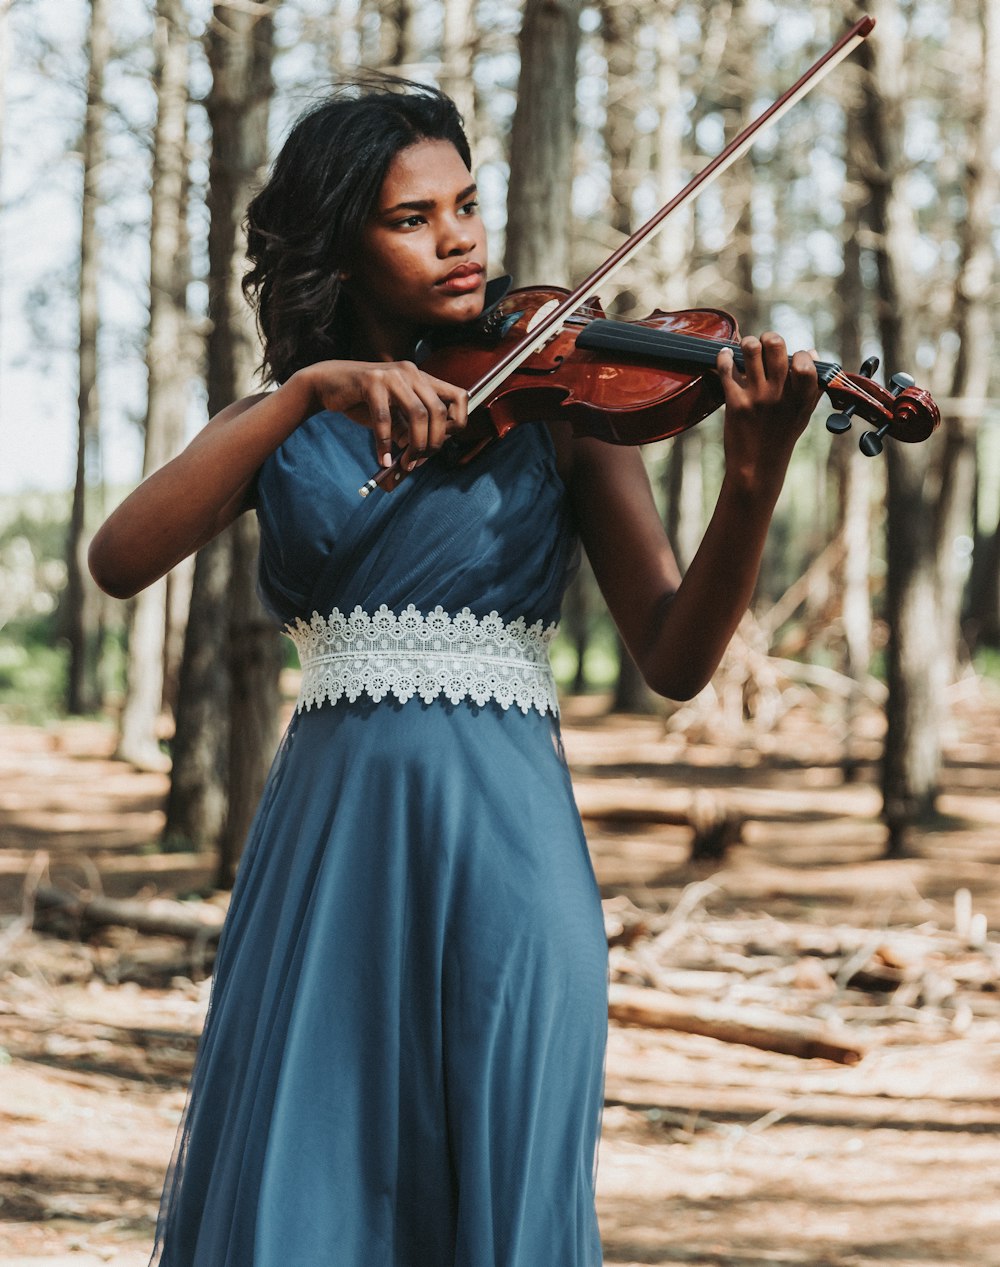 Une femme en robe bleue jouant du violon